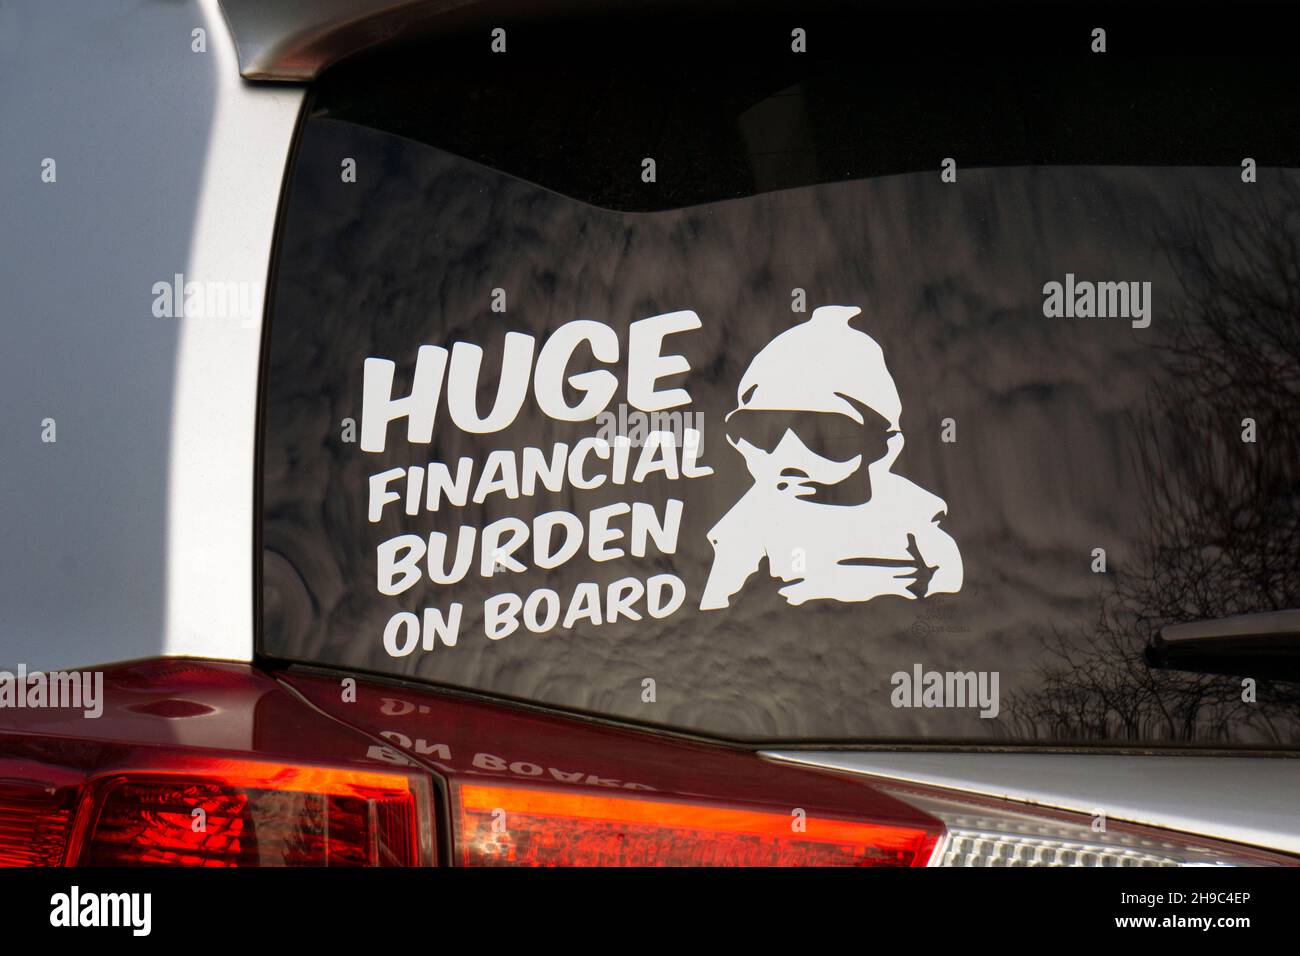 Un autocollant apposé à l'arrière d'une voiture indiquant un énorme fardeau financier à bord au lieu de bébé à bord.Dans un parking à Queens, New York. Banque D'Images